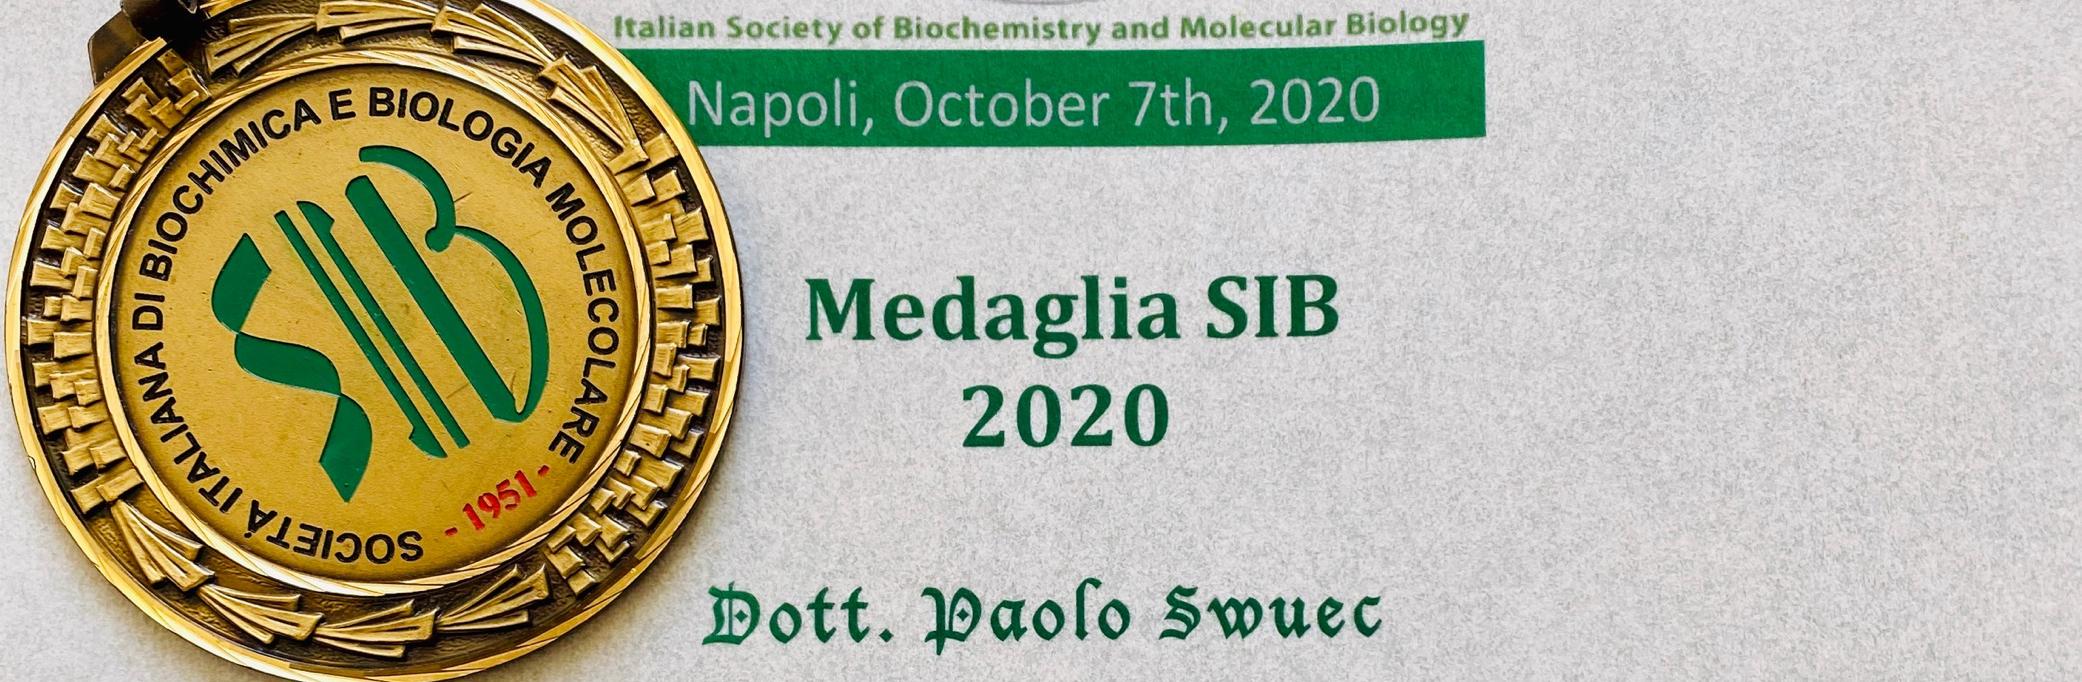 Paolo Swuec vince le Medaglia 2020 della Società Italiana di Biochimica e Biologia Molecolare